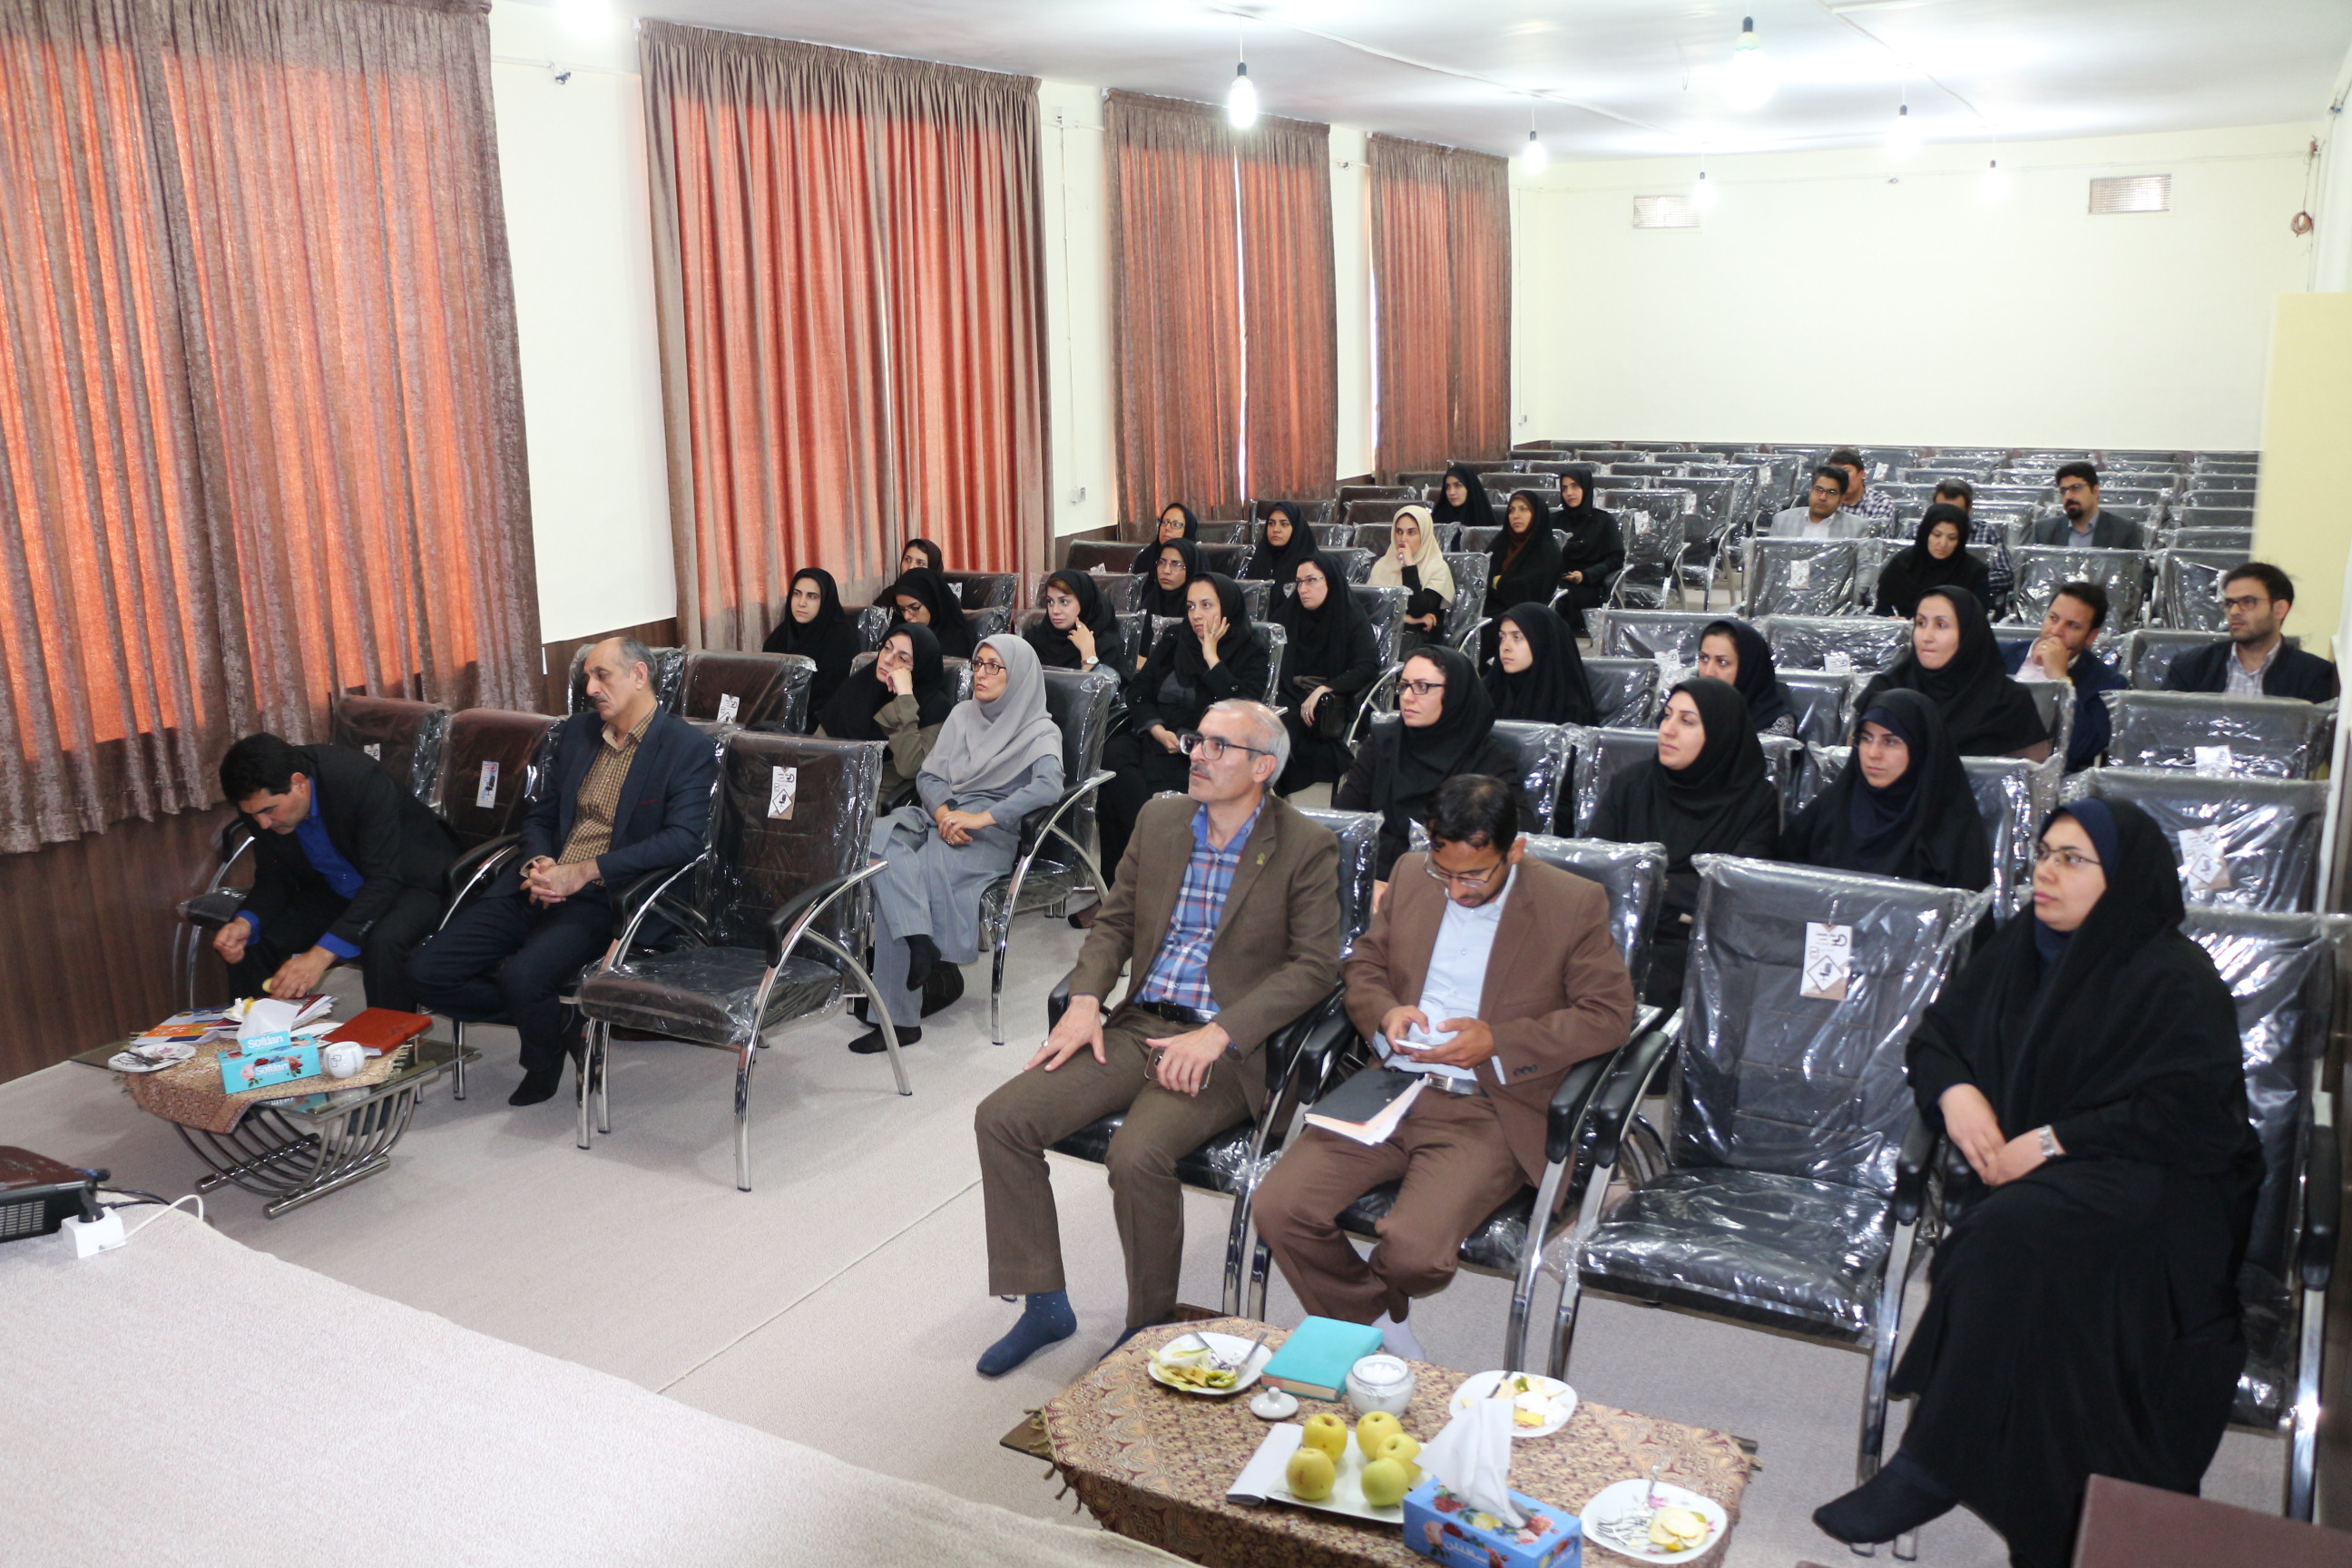 نشست صمیمی اعضای هیأت علمی با دکتر علیرضا حسینی رییس دانشگاه کوثر